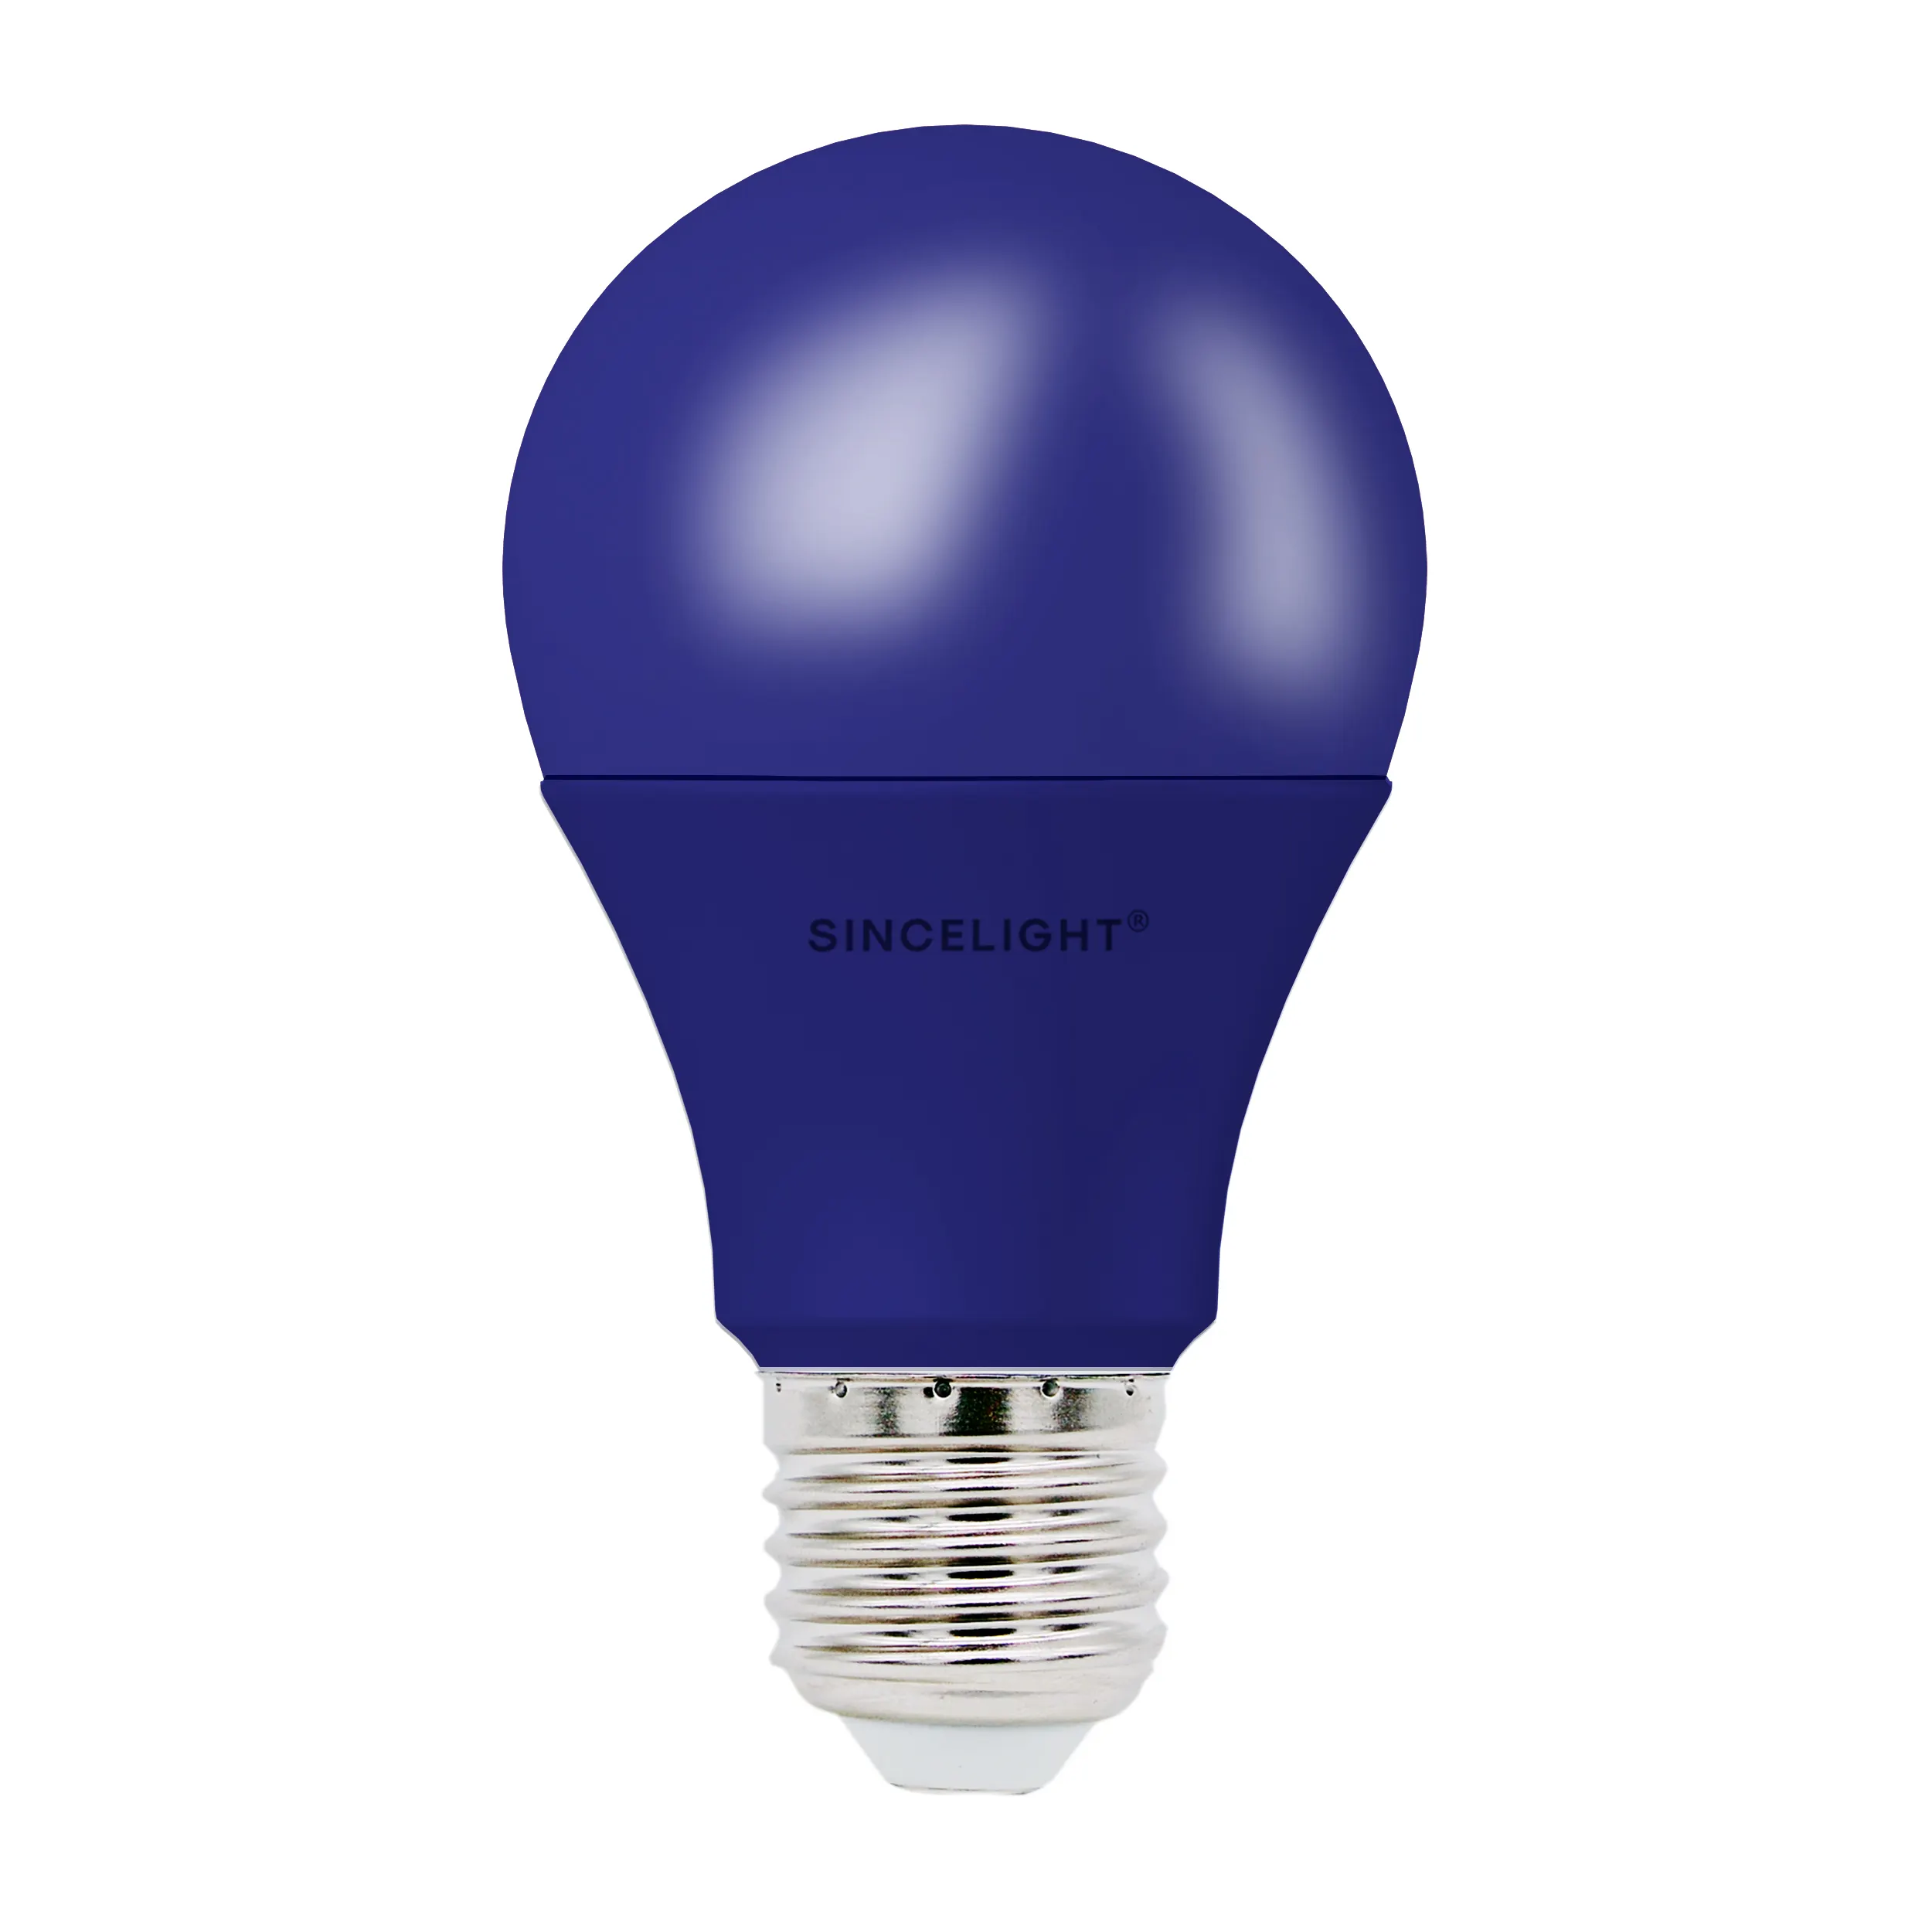 Ampoule Led bleu marine A60 E27, couleur de Base Led 10W 220V, Angle de faisceau à 200 degrés, ampoule de noël, de vacances